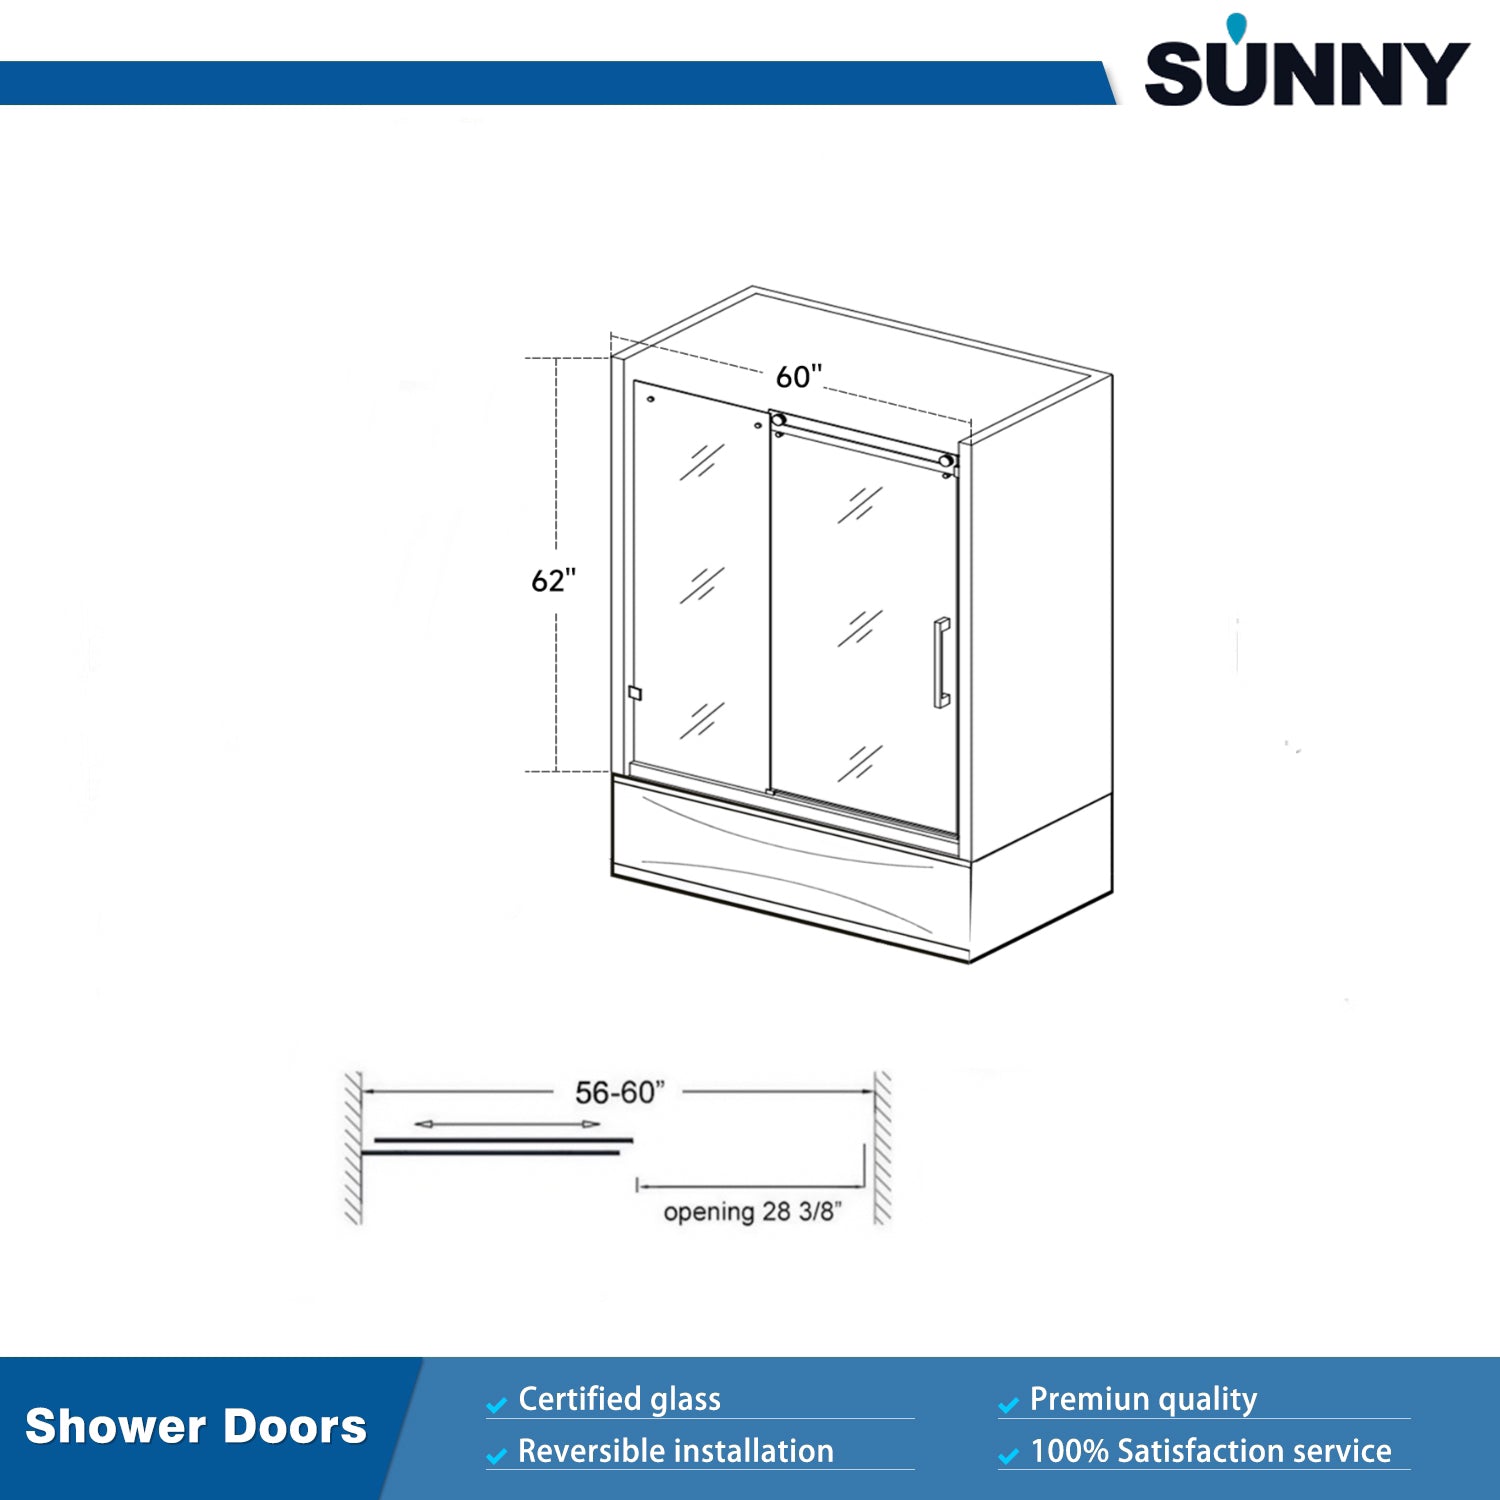 SUNNY SHOWER 60 in. W x 62 in. H Frameless Bathtub Sliding Doors Size Chart